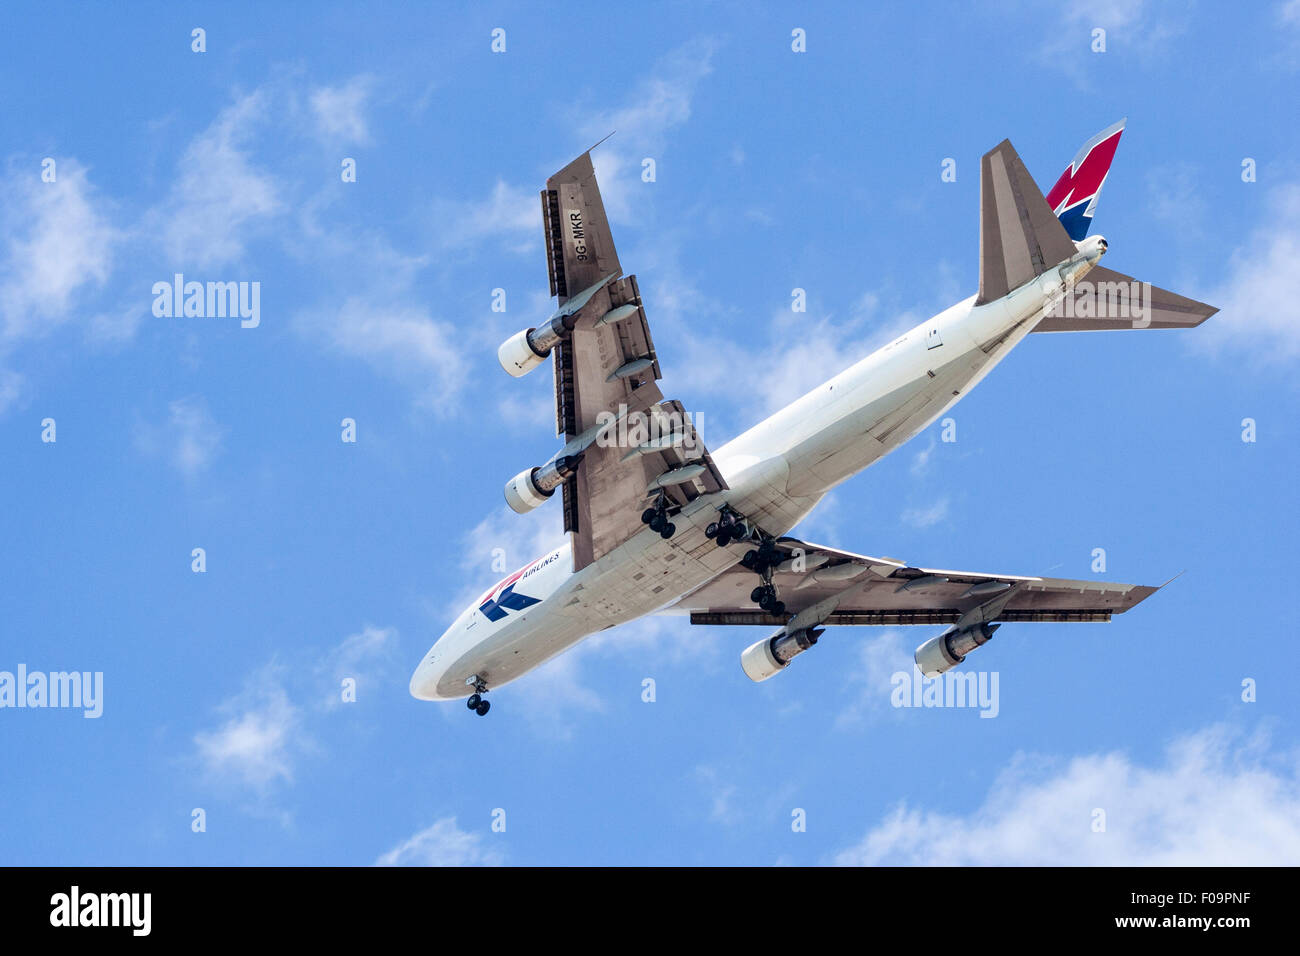 Boeing 747 MK transports l'écorchage passage avec ses roues vers le bas tout en s'approche de l'aéroport local. Ciel bleu et blanc, quelques nuages vaporeux. Banque D'Images